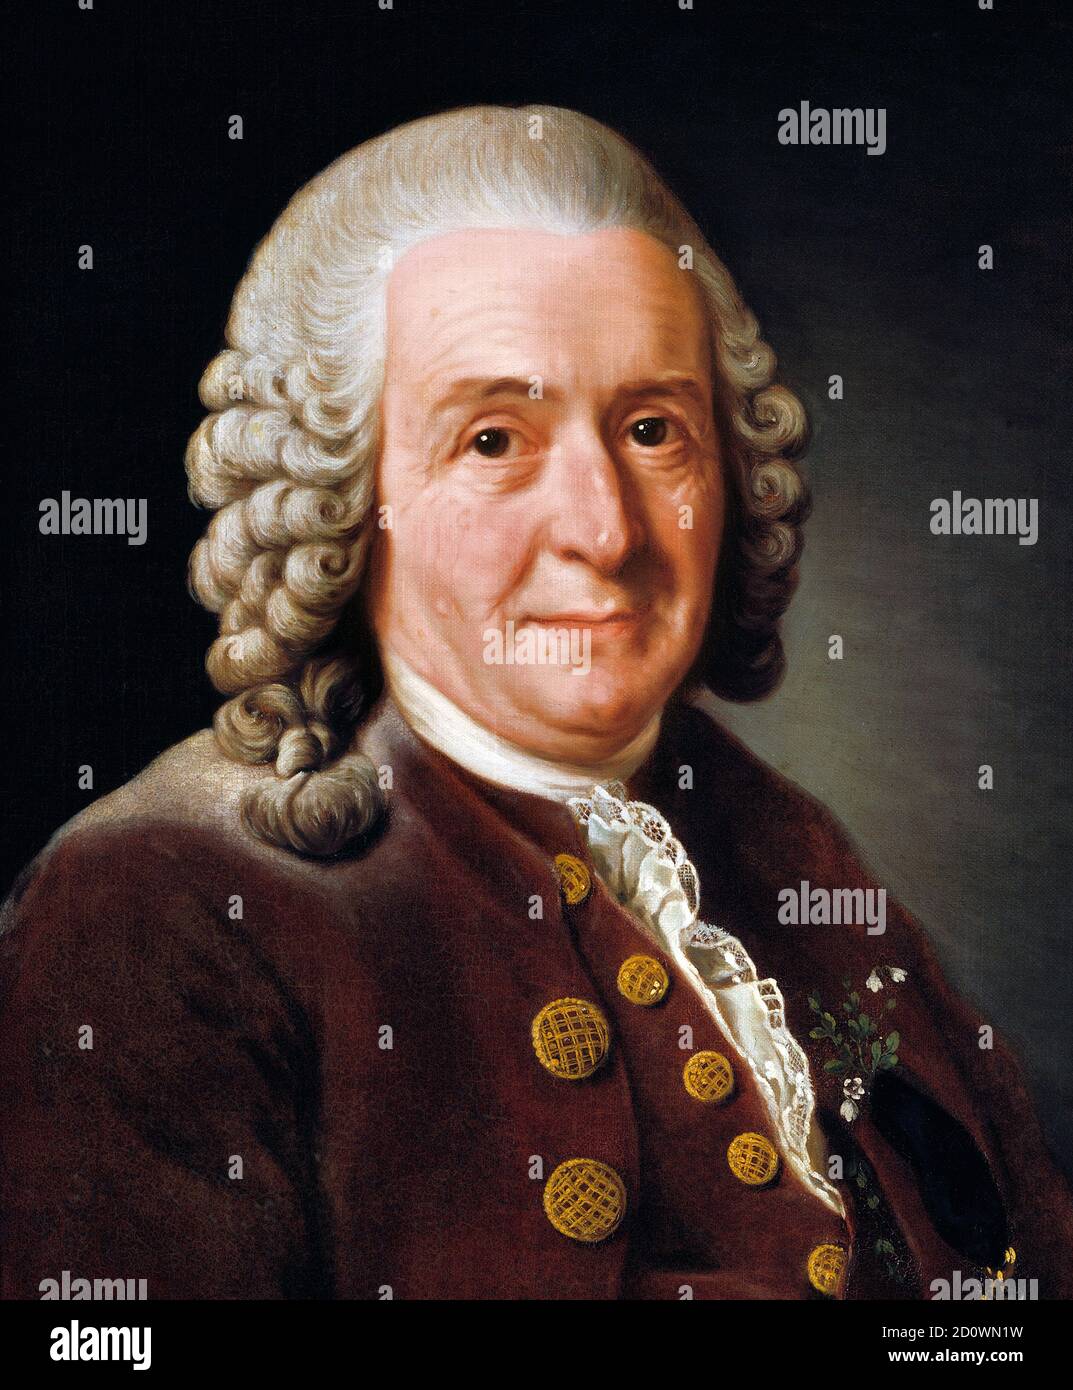 Carl Linnaeus. Porträt des schwedischen Botanikers und Zooologen Carl Linnaeus (1707-1778) von Alexander Roslin (1718–1793), Öl auf Leinwand, 1775. Nationalmuseum (Stockholm) Stockfoto